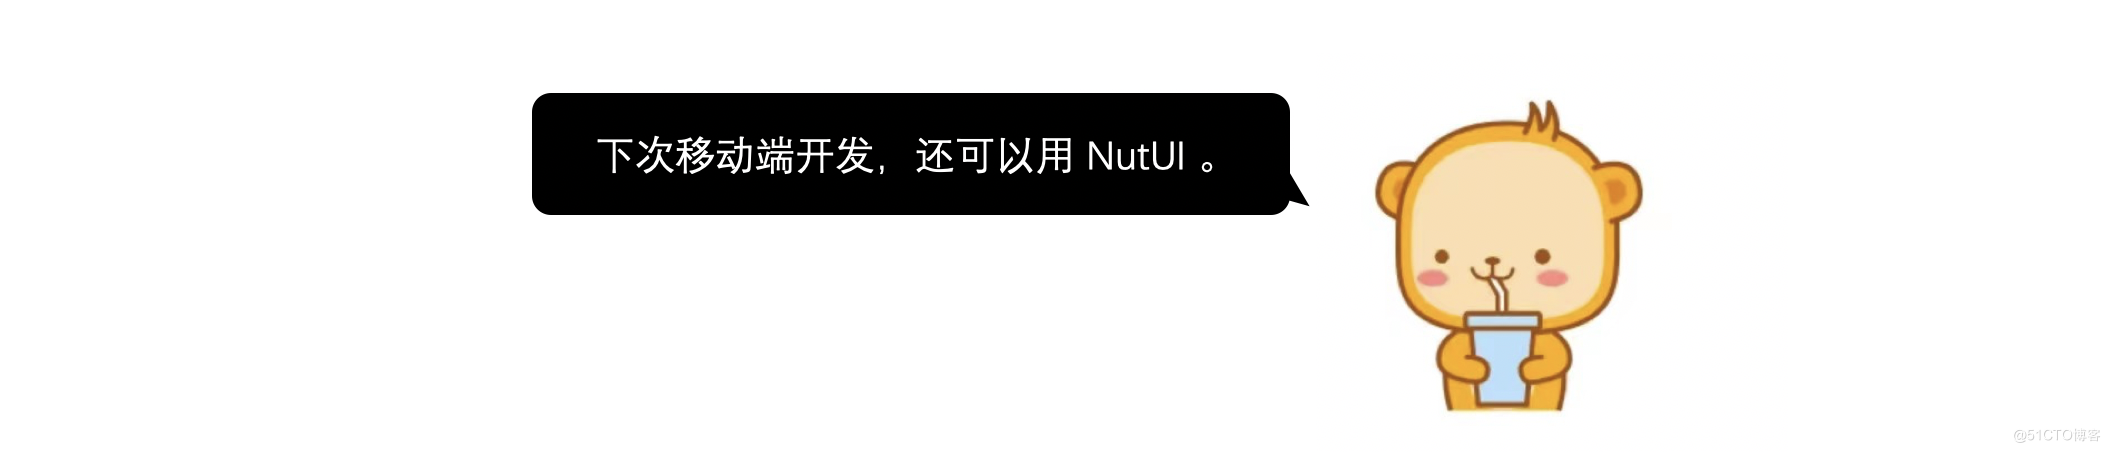 金先生的 NutUI3 初体验_NutUI_16